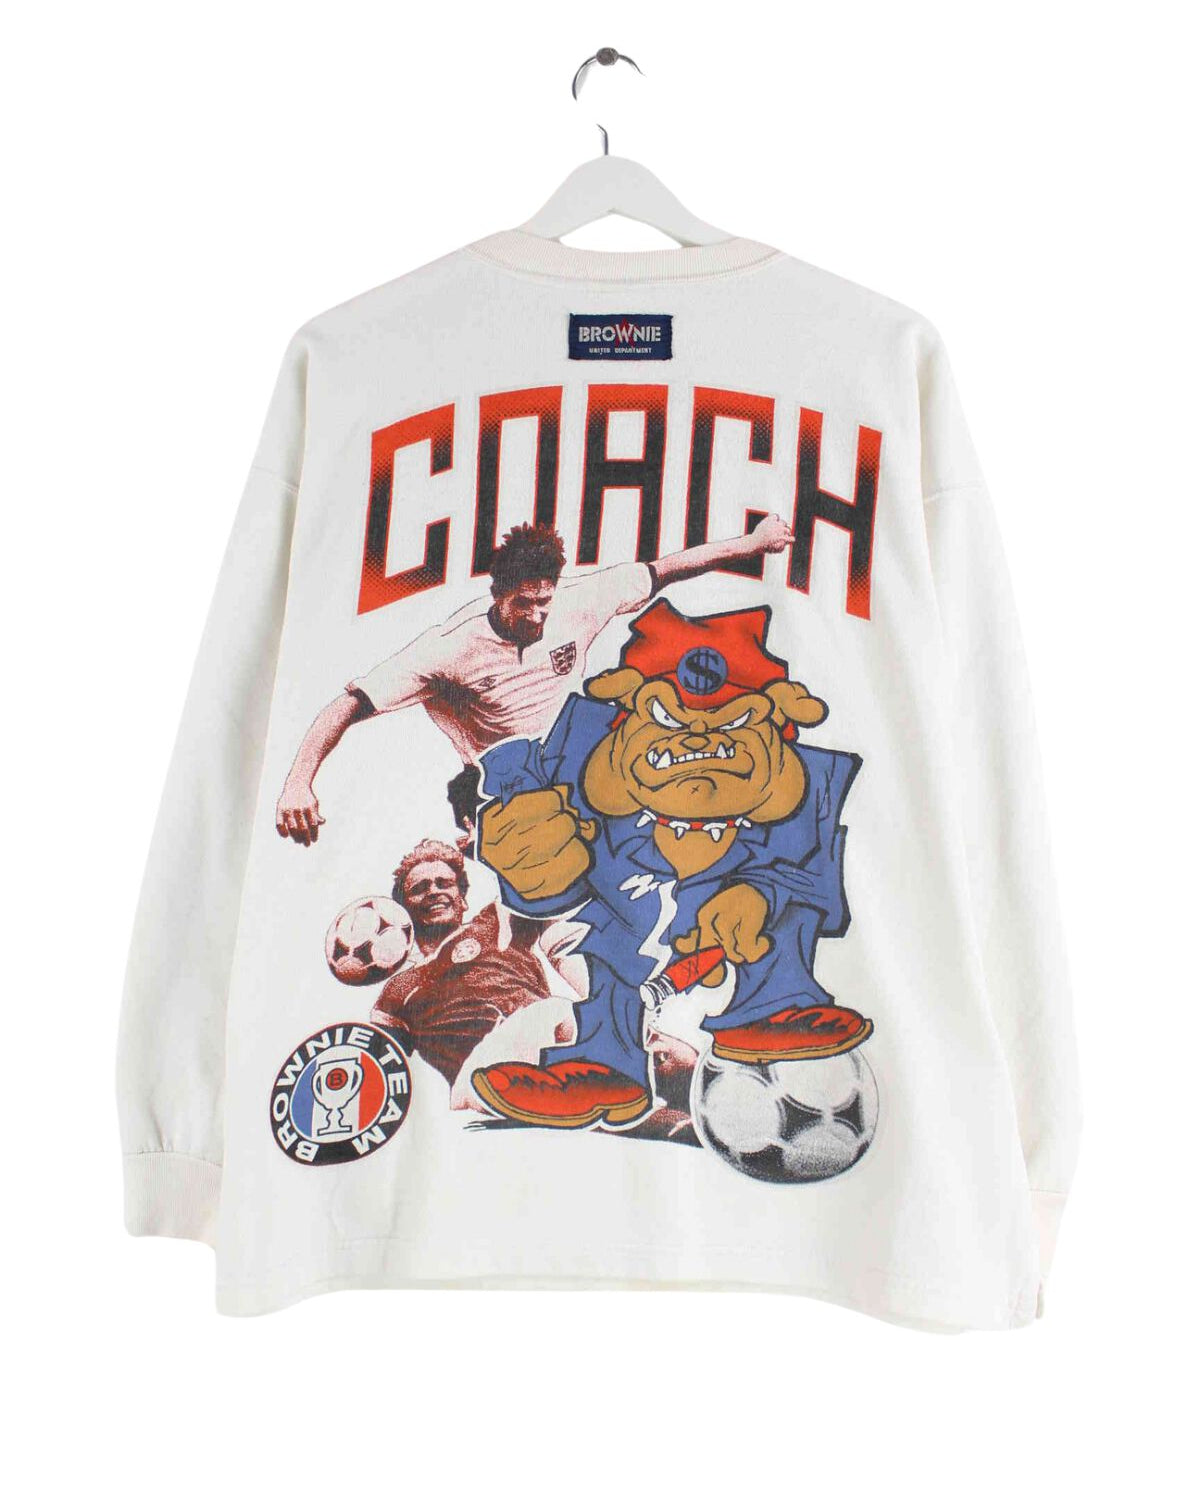 Vintage 90s Brownie Team Sweater Beige S (back image)